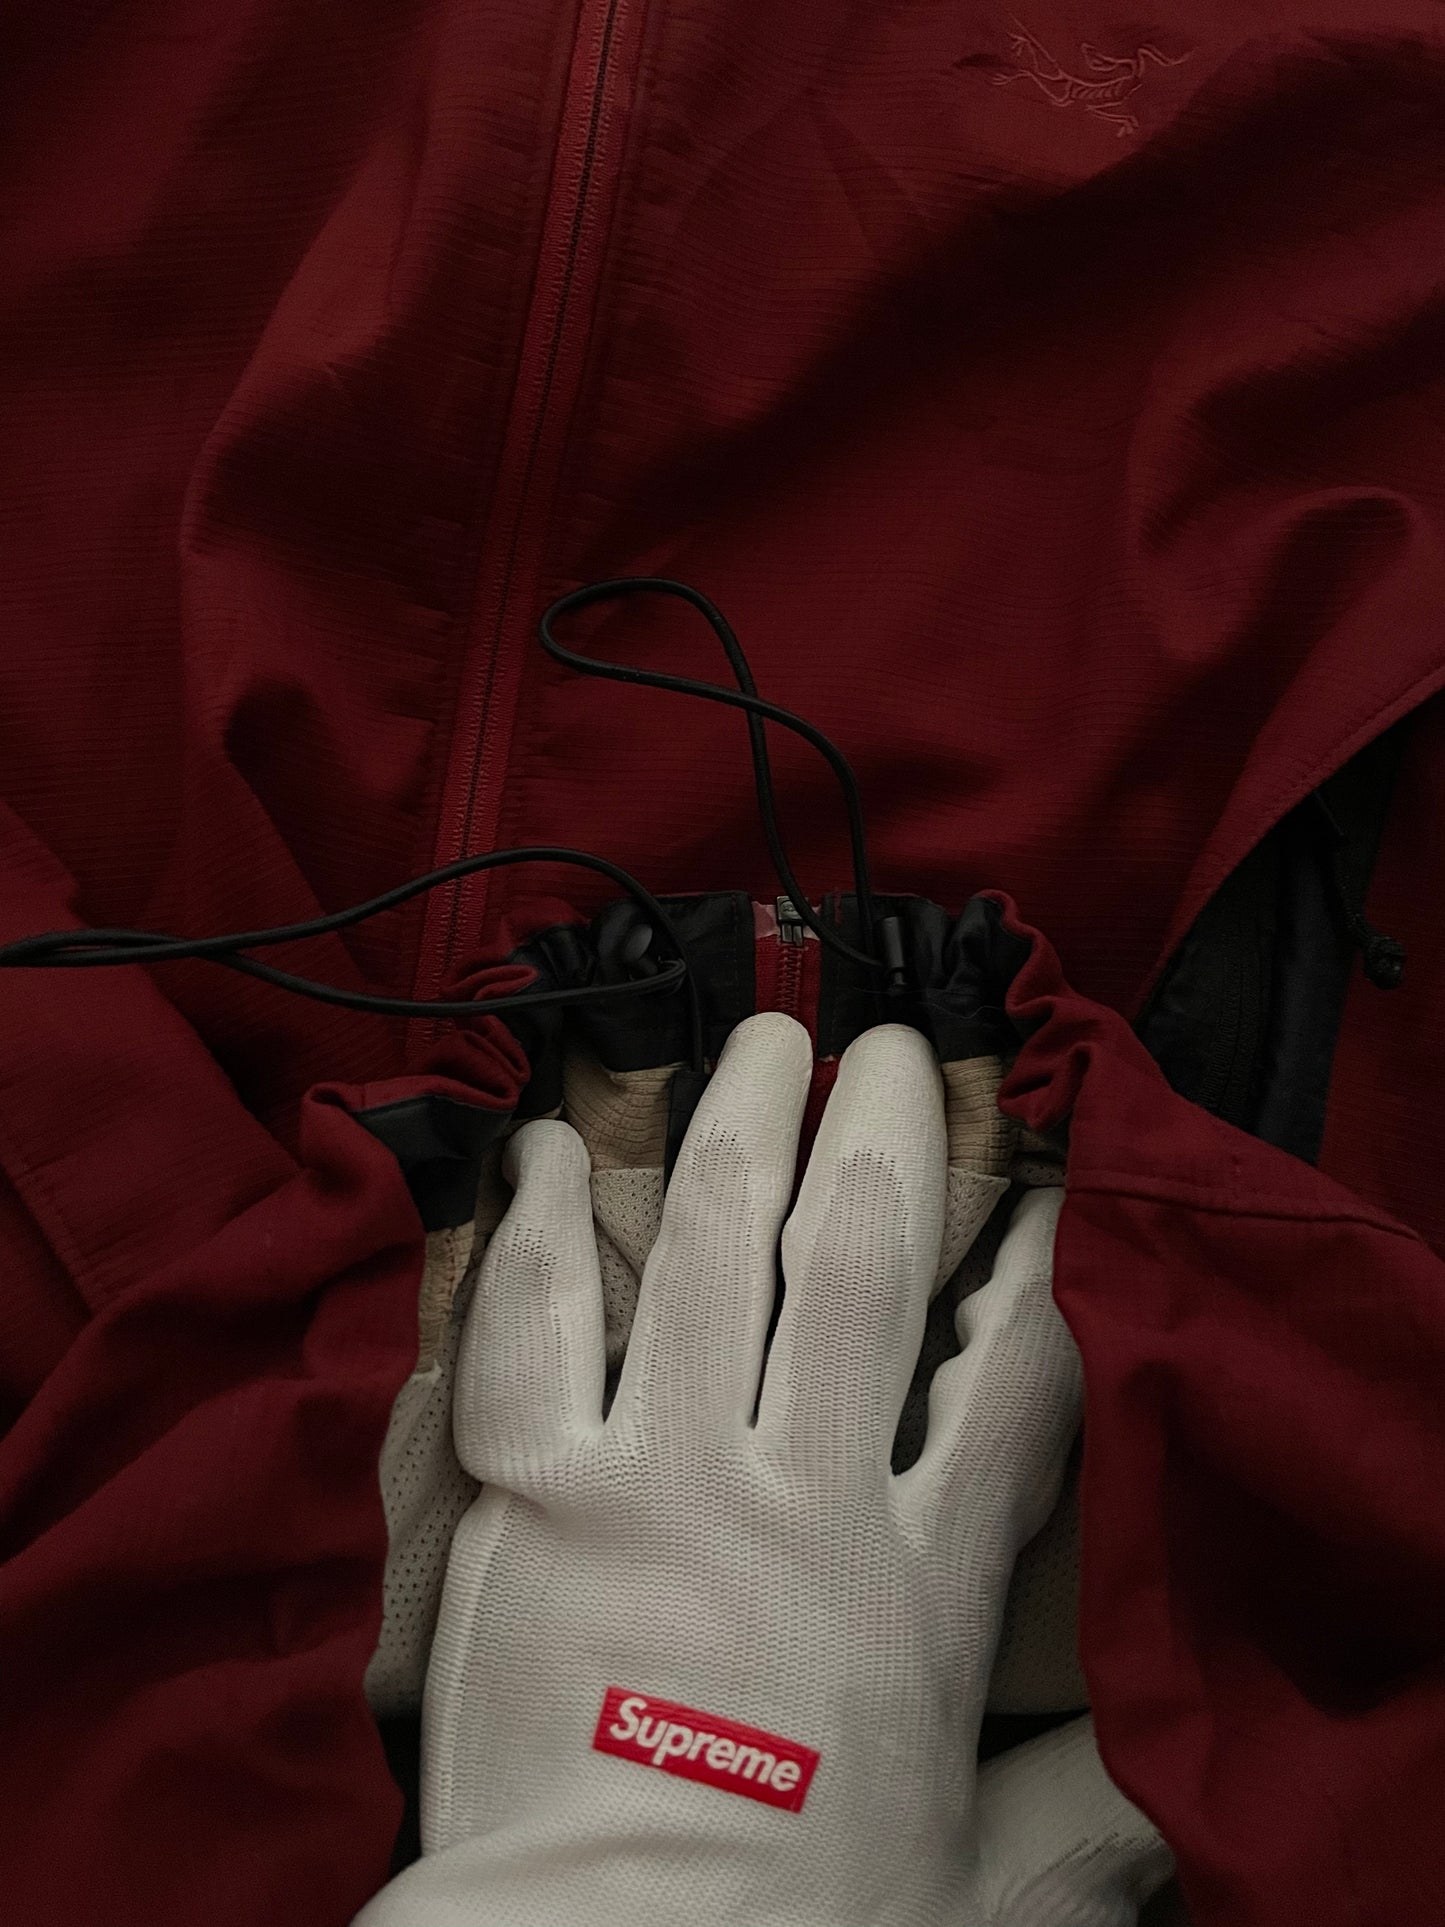 jacket Arc’teryx rojo sangre con tecnología incorporada